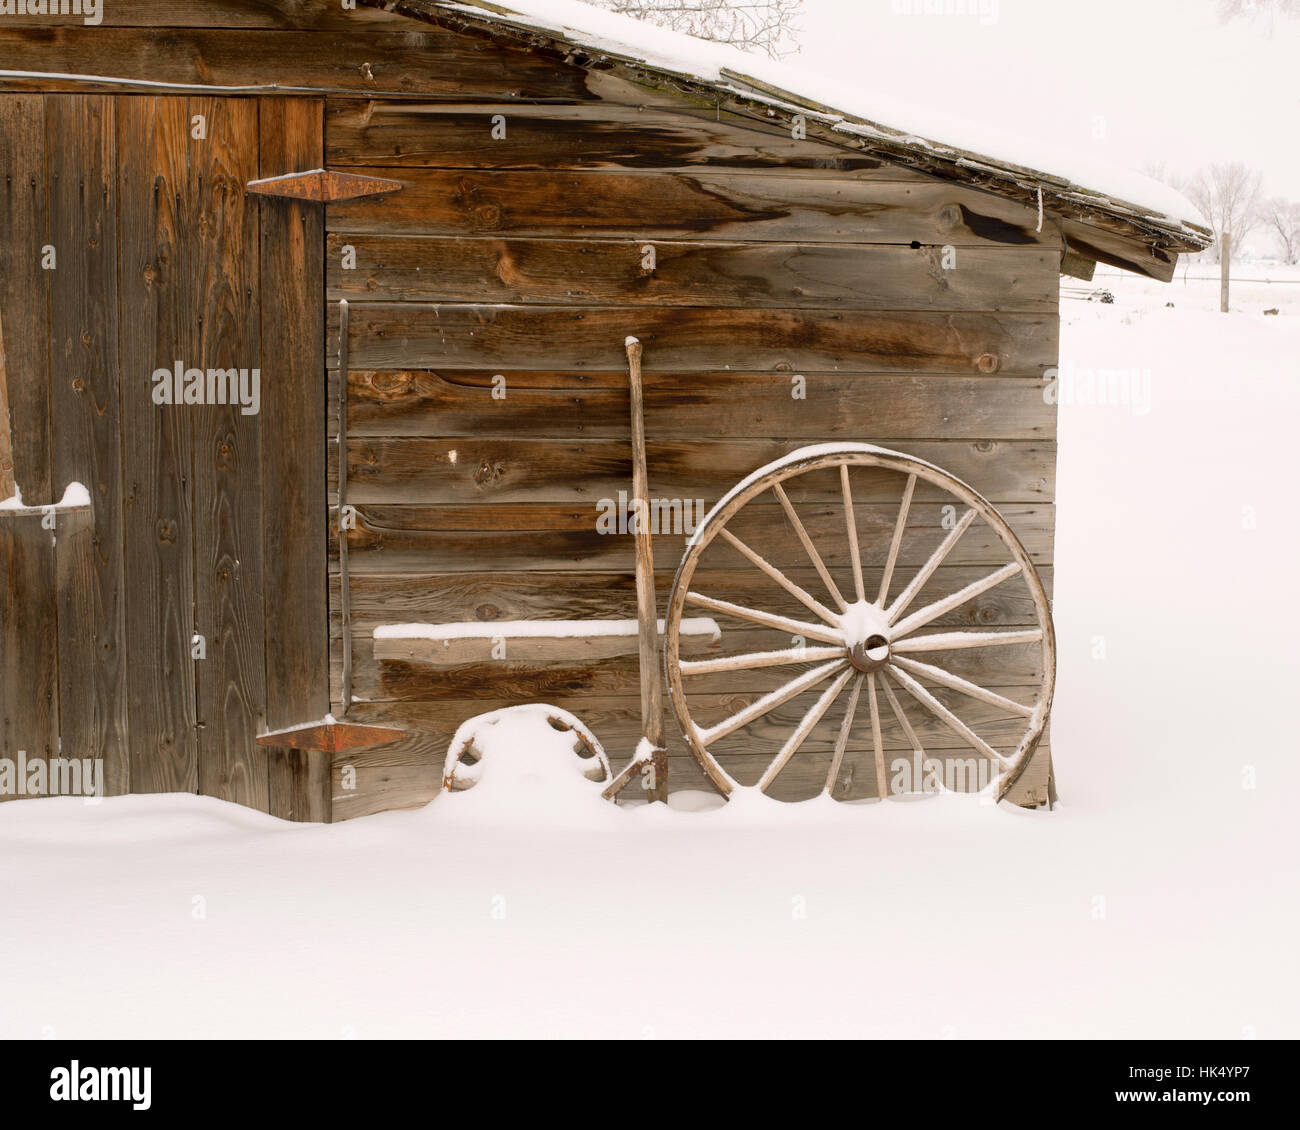 Hangar en bois patiné avec roues de charrette et la neige - square, neige légère Banque D'Images